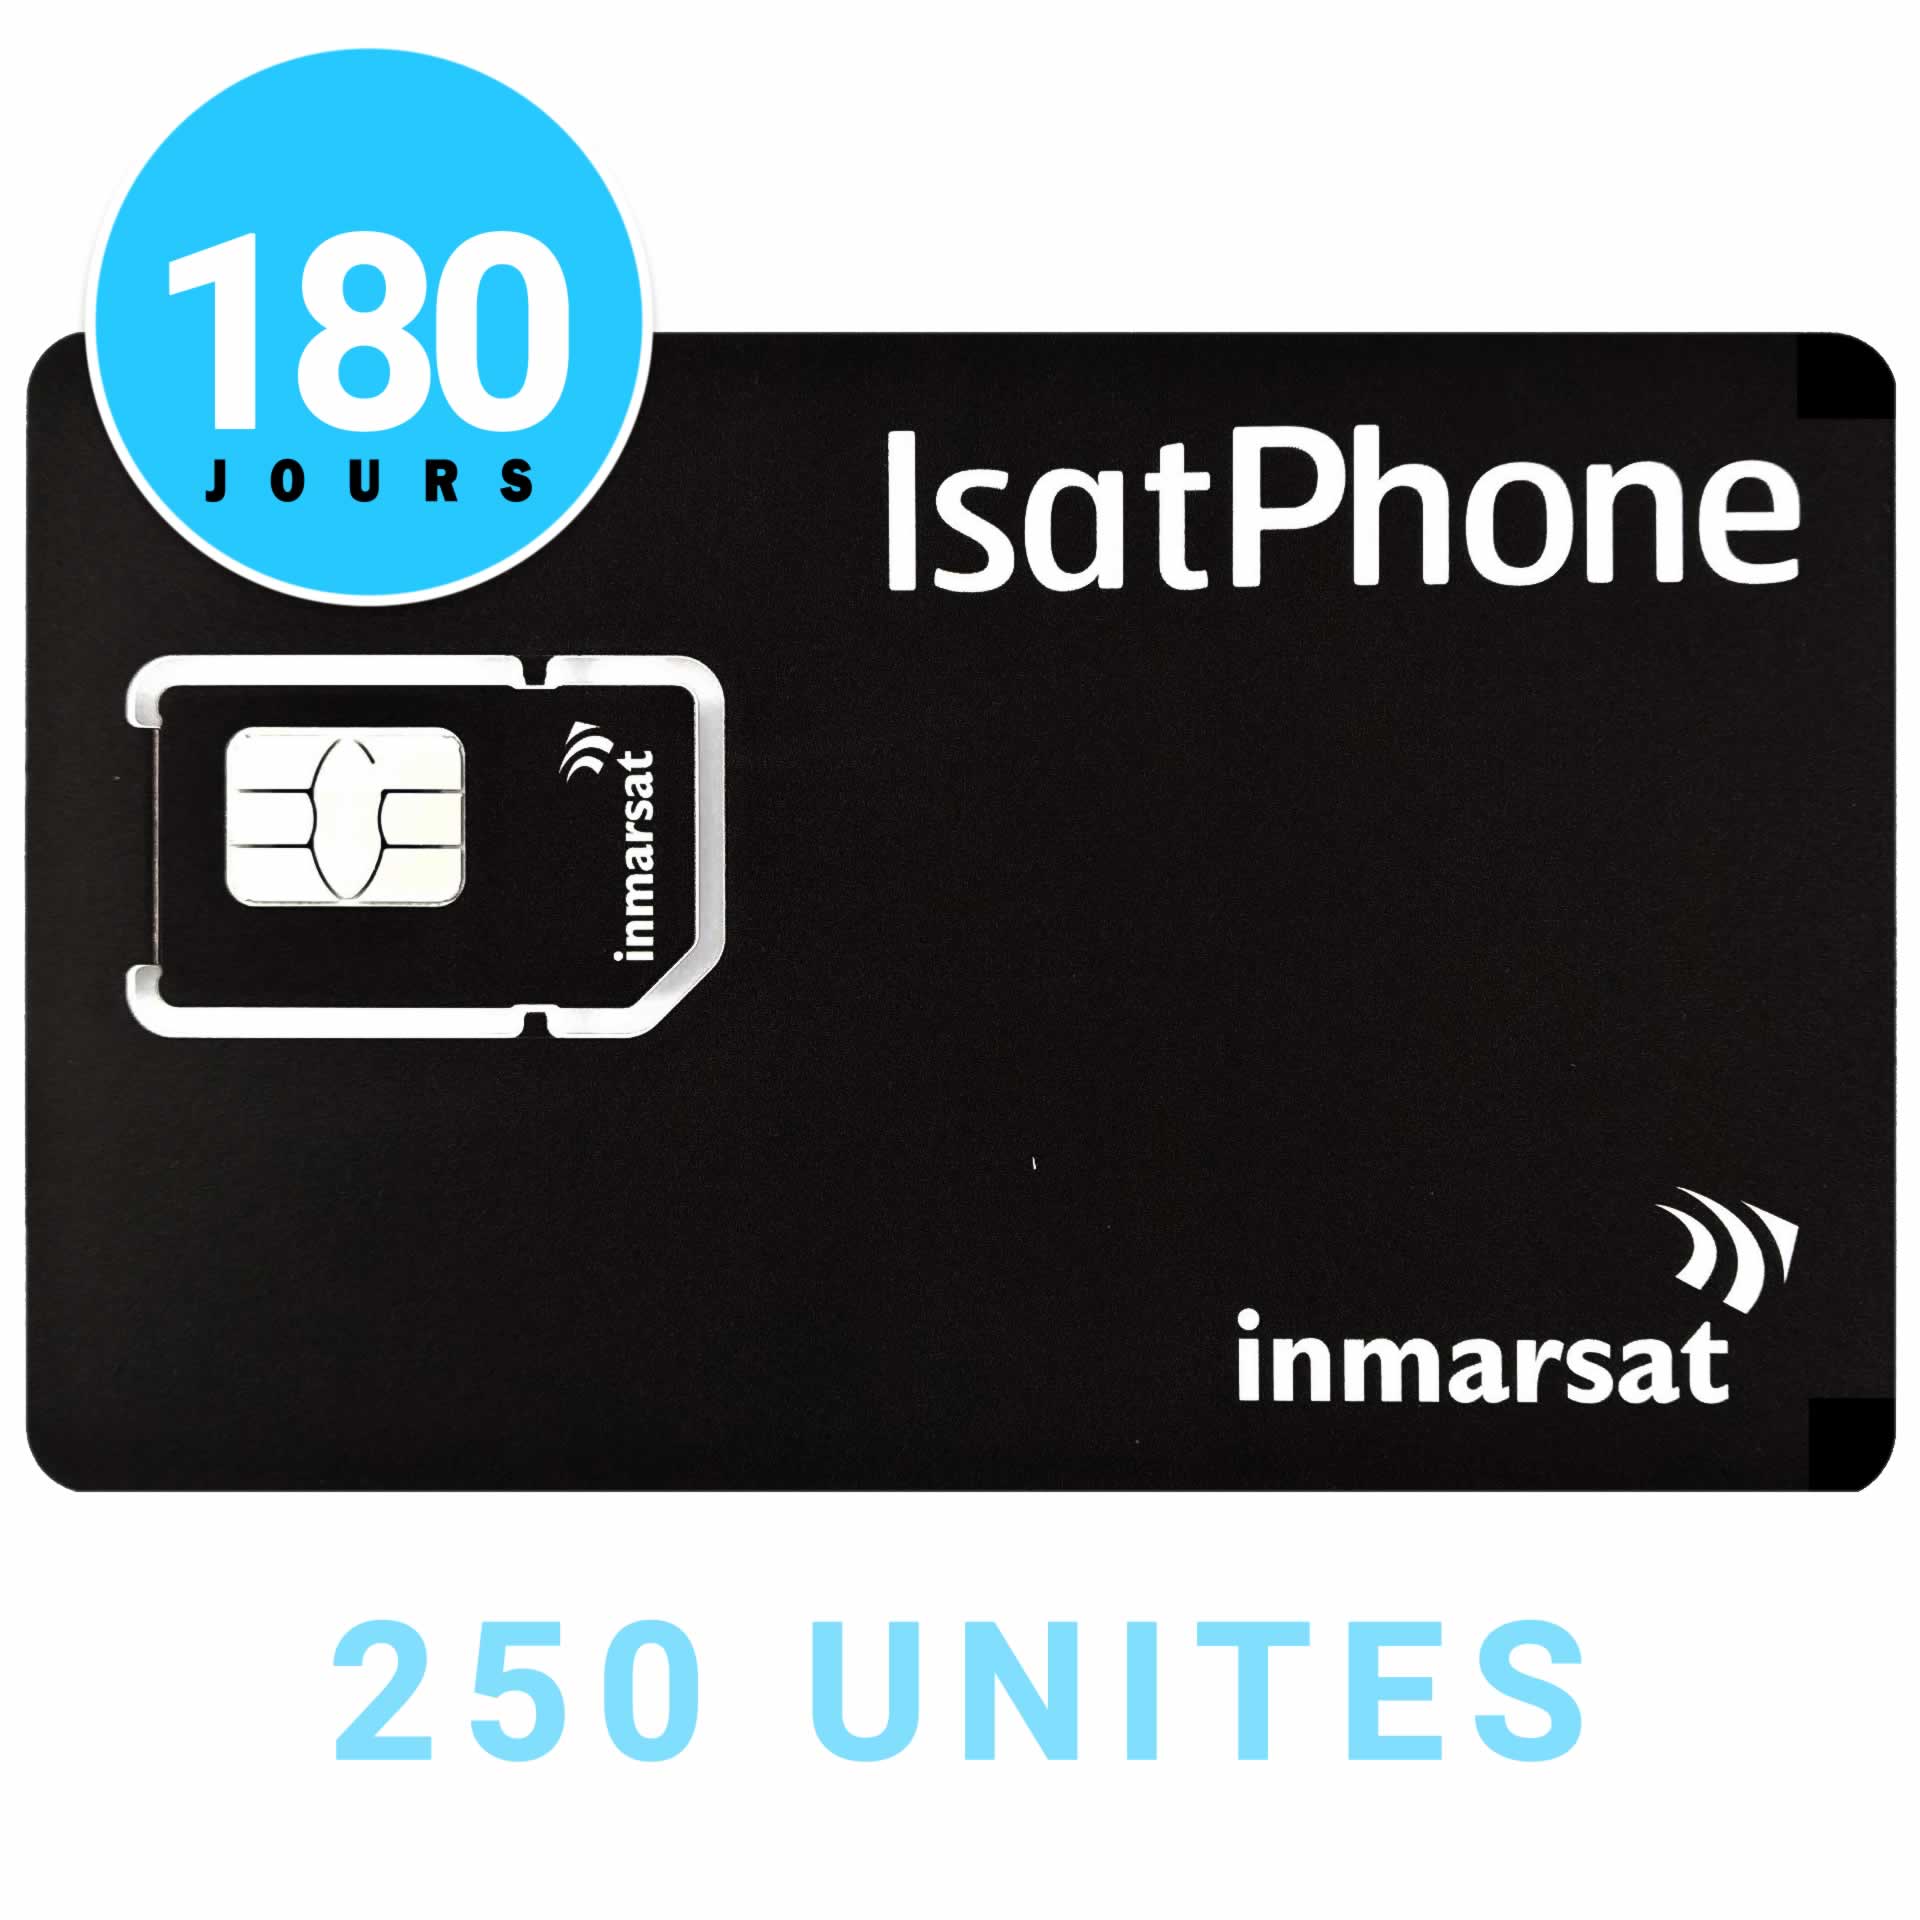 Carte prépayée Inmarsat Isatphone 250 unités 180 jours